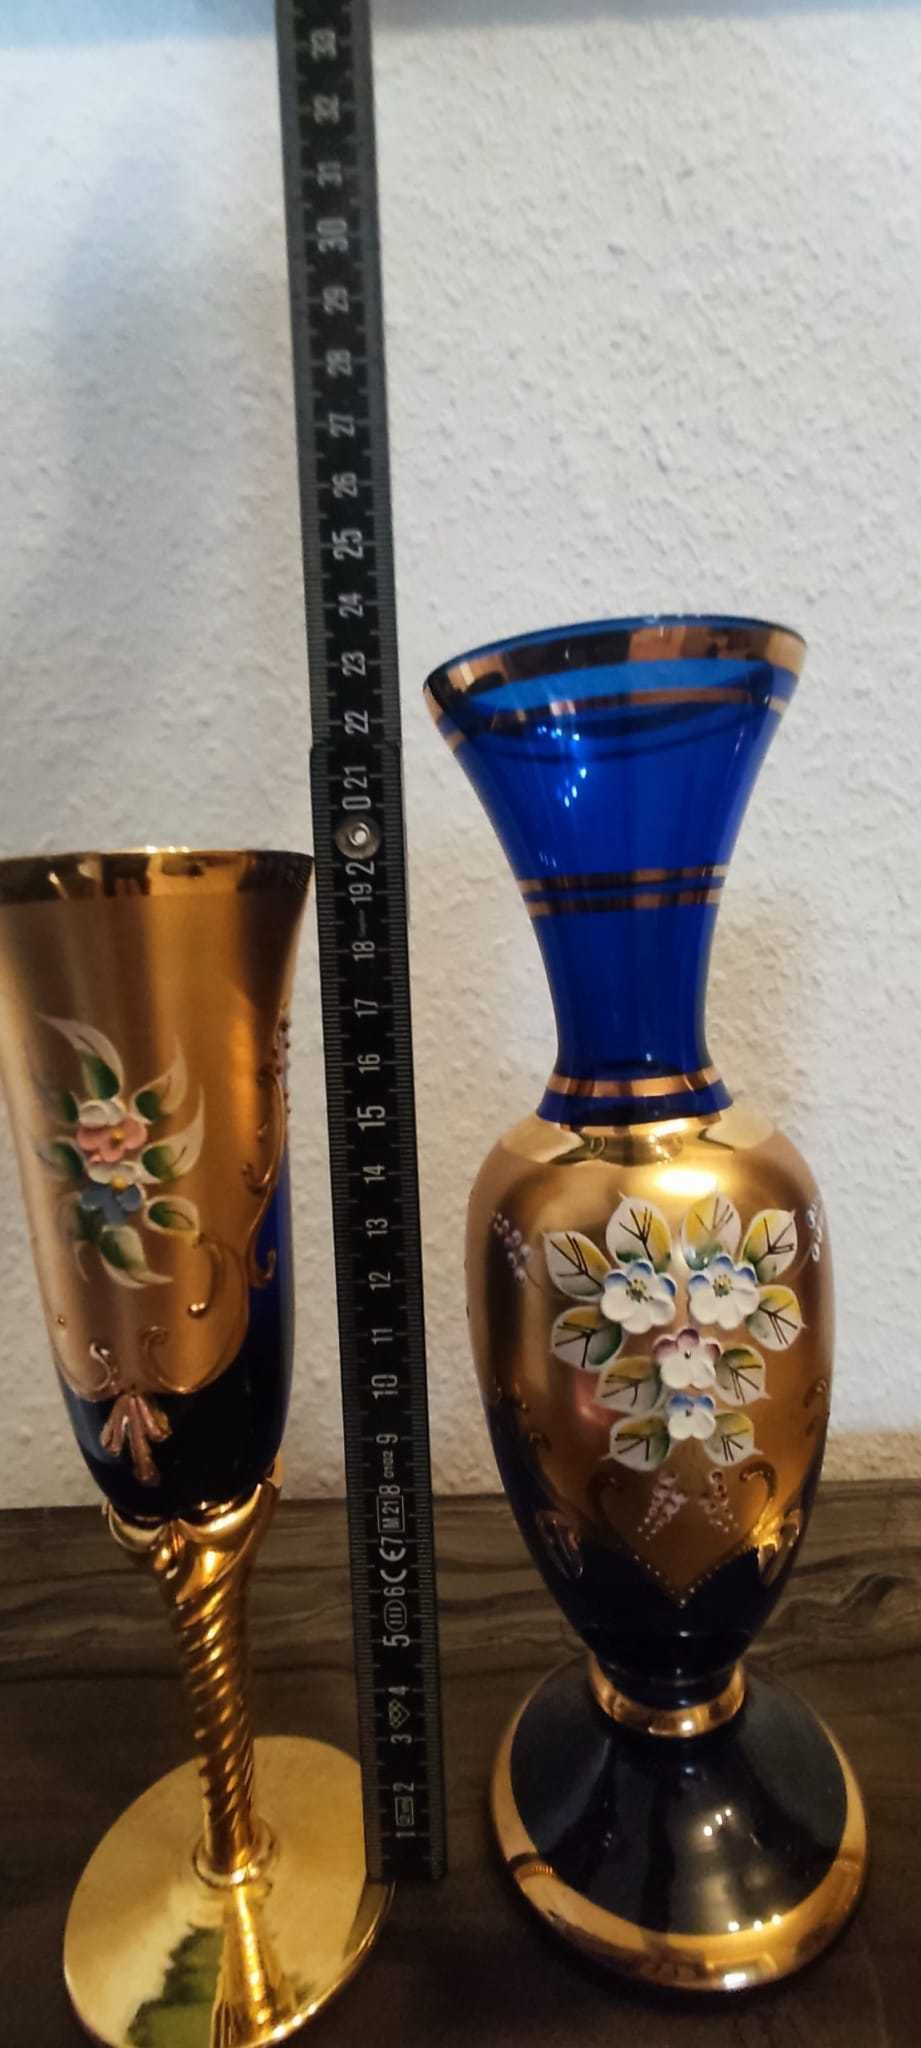 Чаши за шампанско "Murano" с вазичка